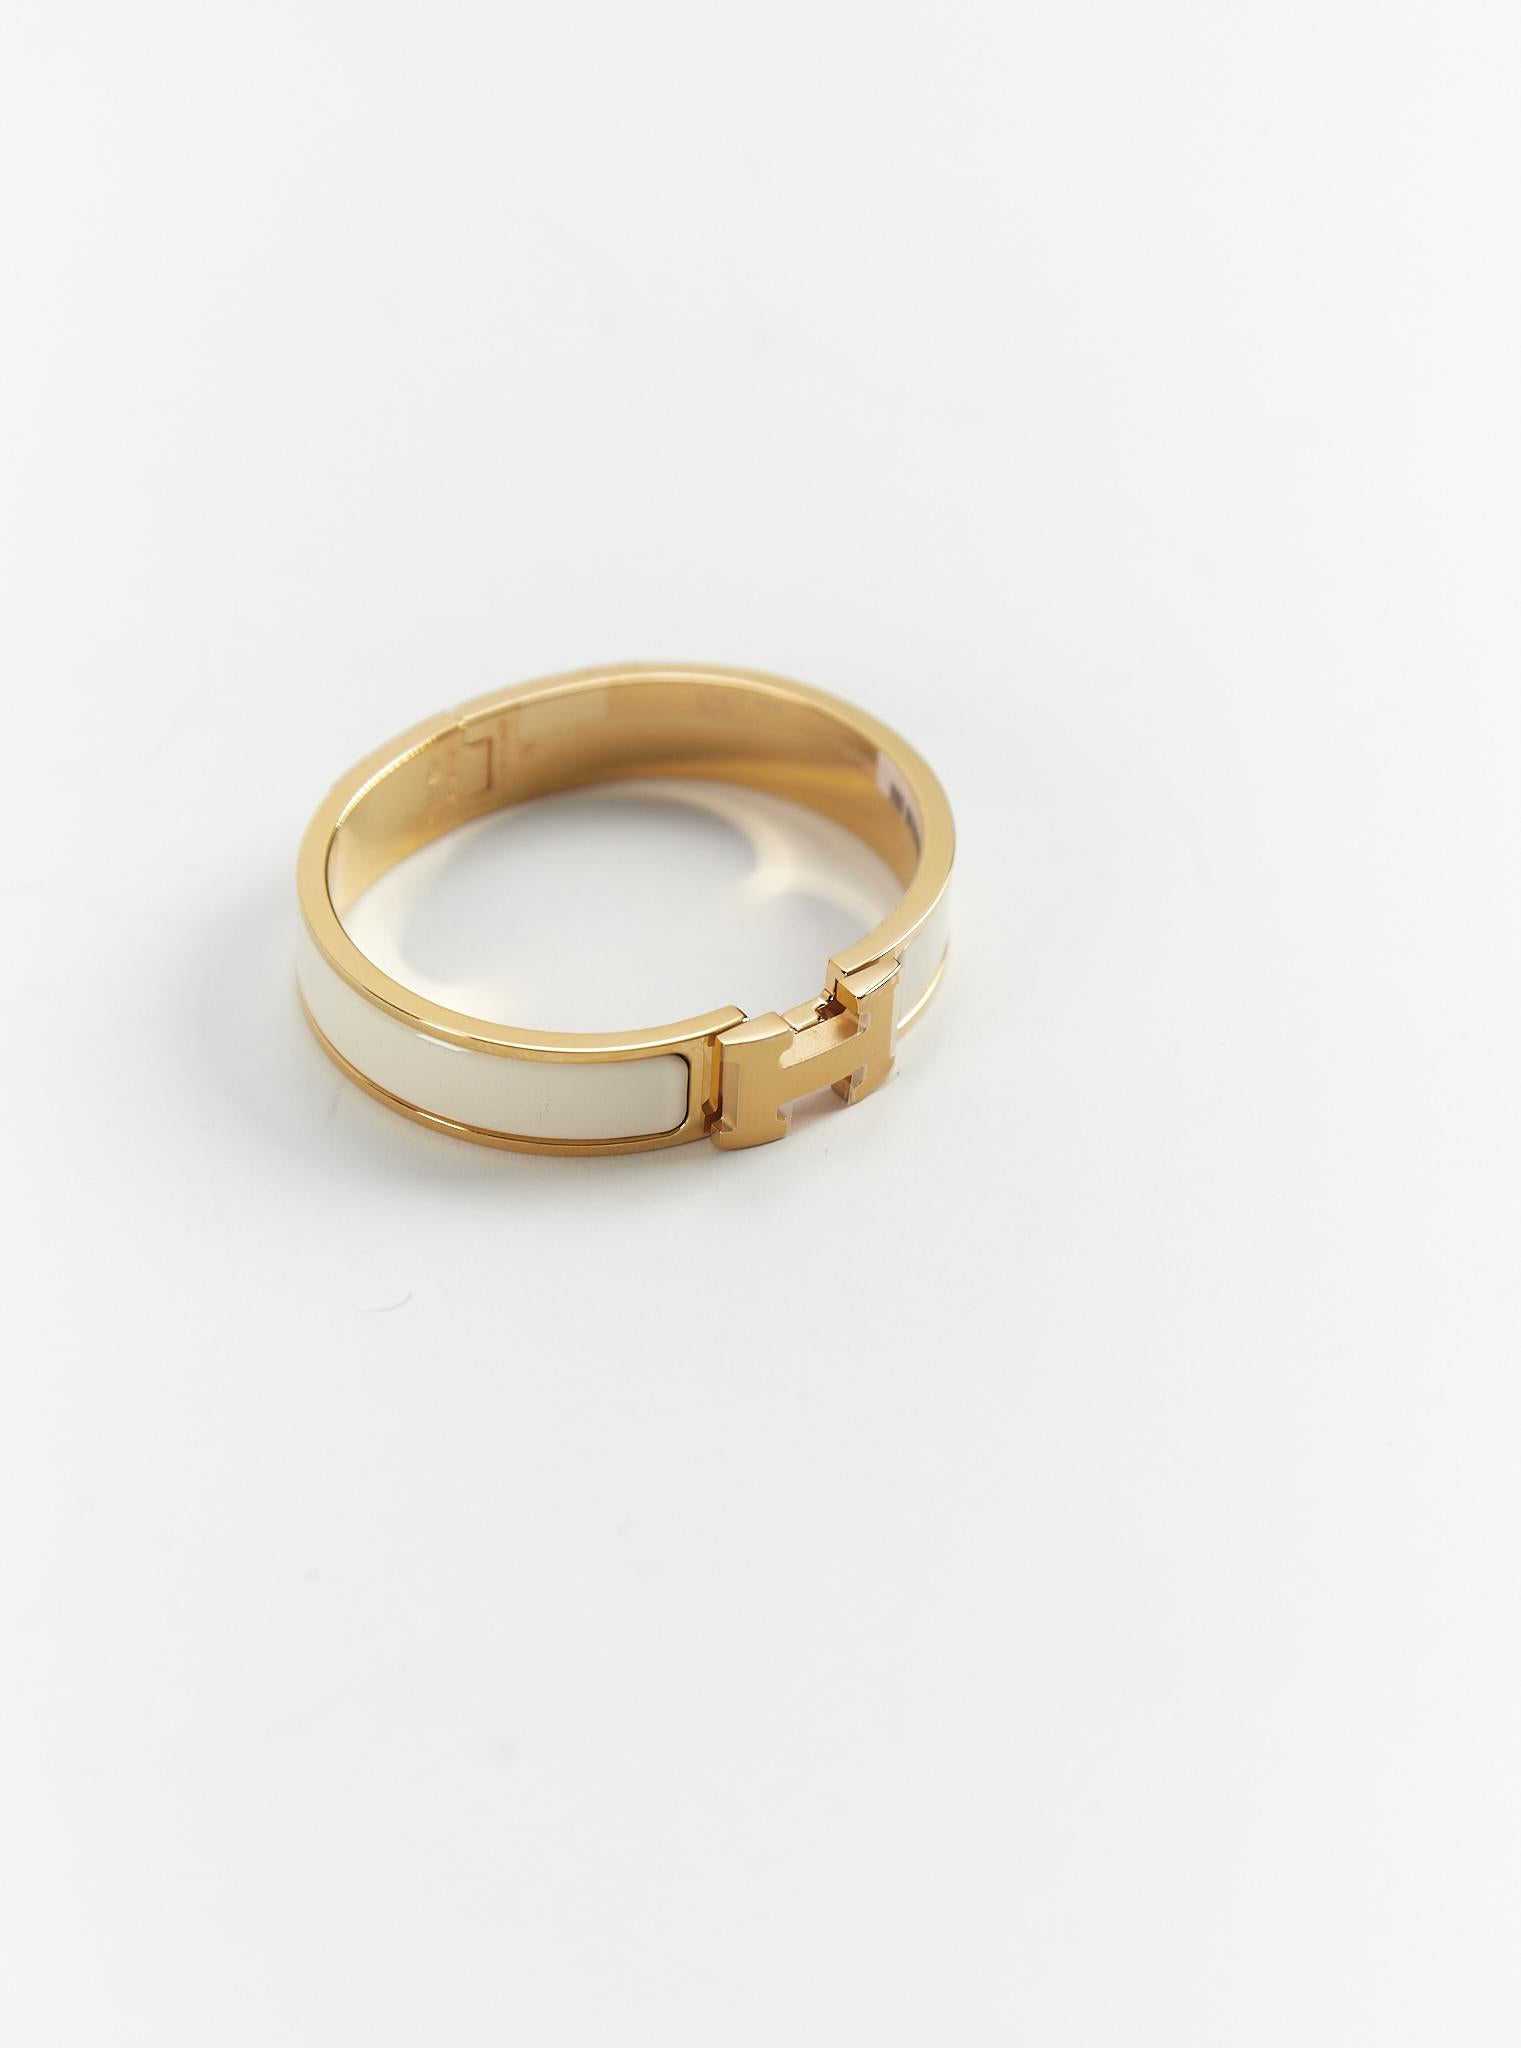 Hermès Clic H PM-Armband in Creme und Gold

Größe des Handgelenks: 16.8 cm  Breite: 12 mm

Hergestellt in Frankreich